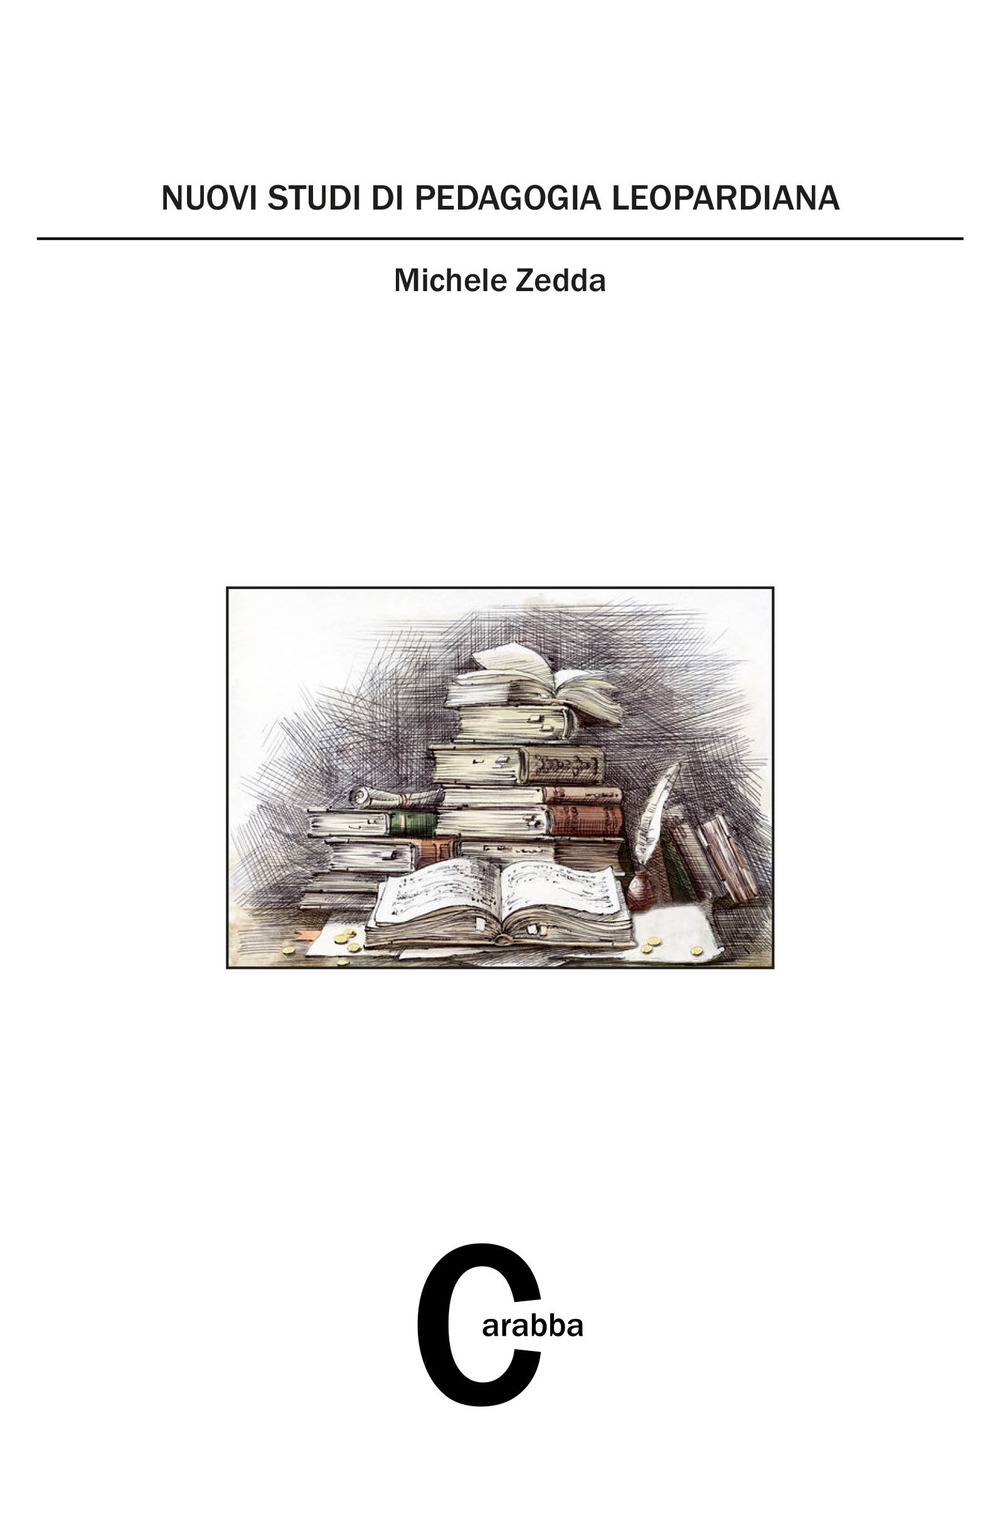 Libri Michele Zedda - Nuovi Studi Di Pedagogia Leopardiana NUOVO SIGILLATO, EDIZIONE DEL 01/01/2021 SUBITO DISPONIBILE